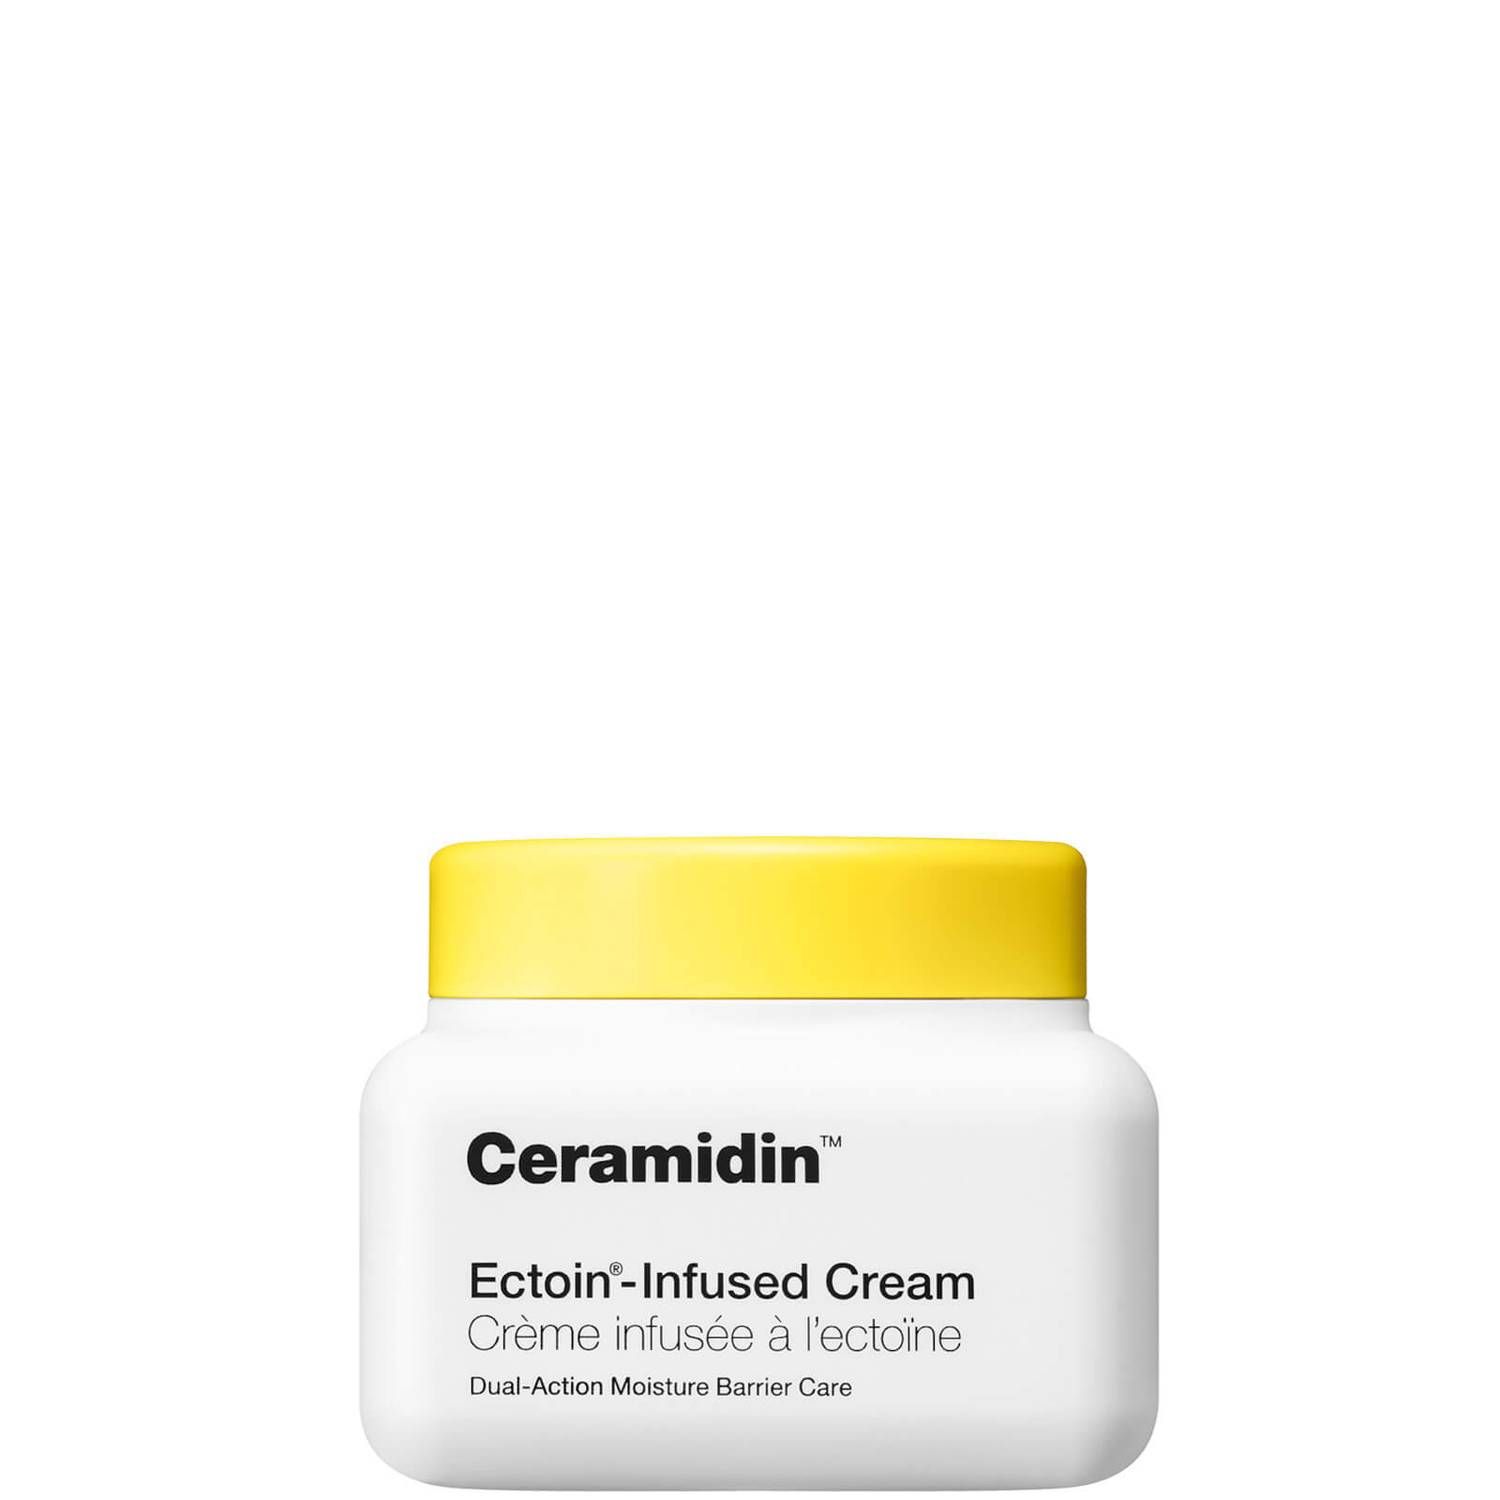 Dr.Jart+ Ceramidin Ectoin-Infused Cream 50ml | Cult Beauty